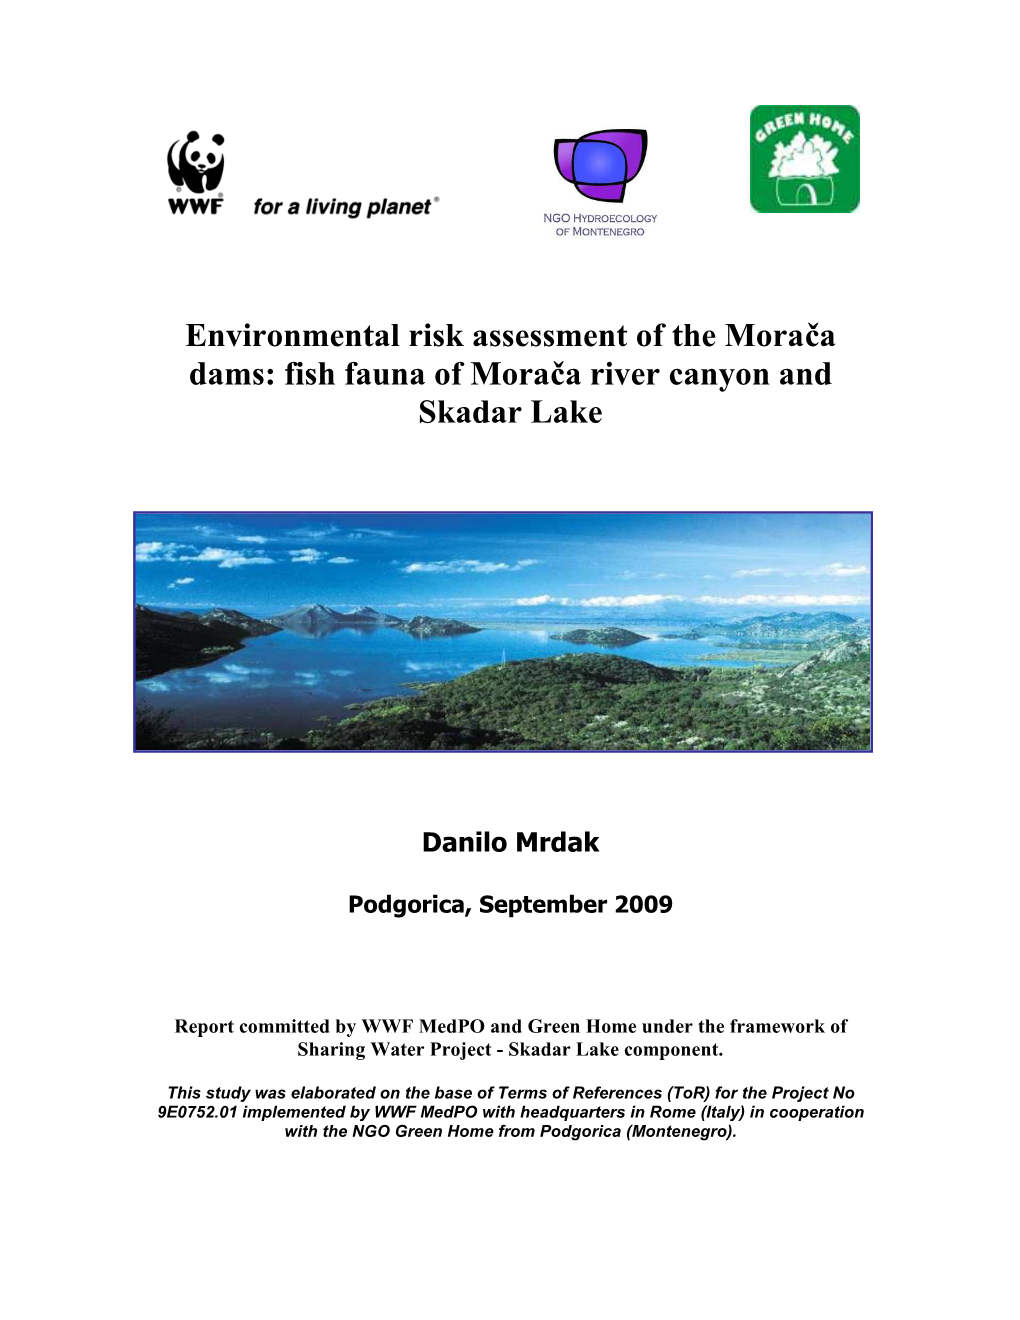 Environmental Risk Assessment of the Morača Dams: Fish Fauna of Morača River Canyon and Skadar Lake